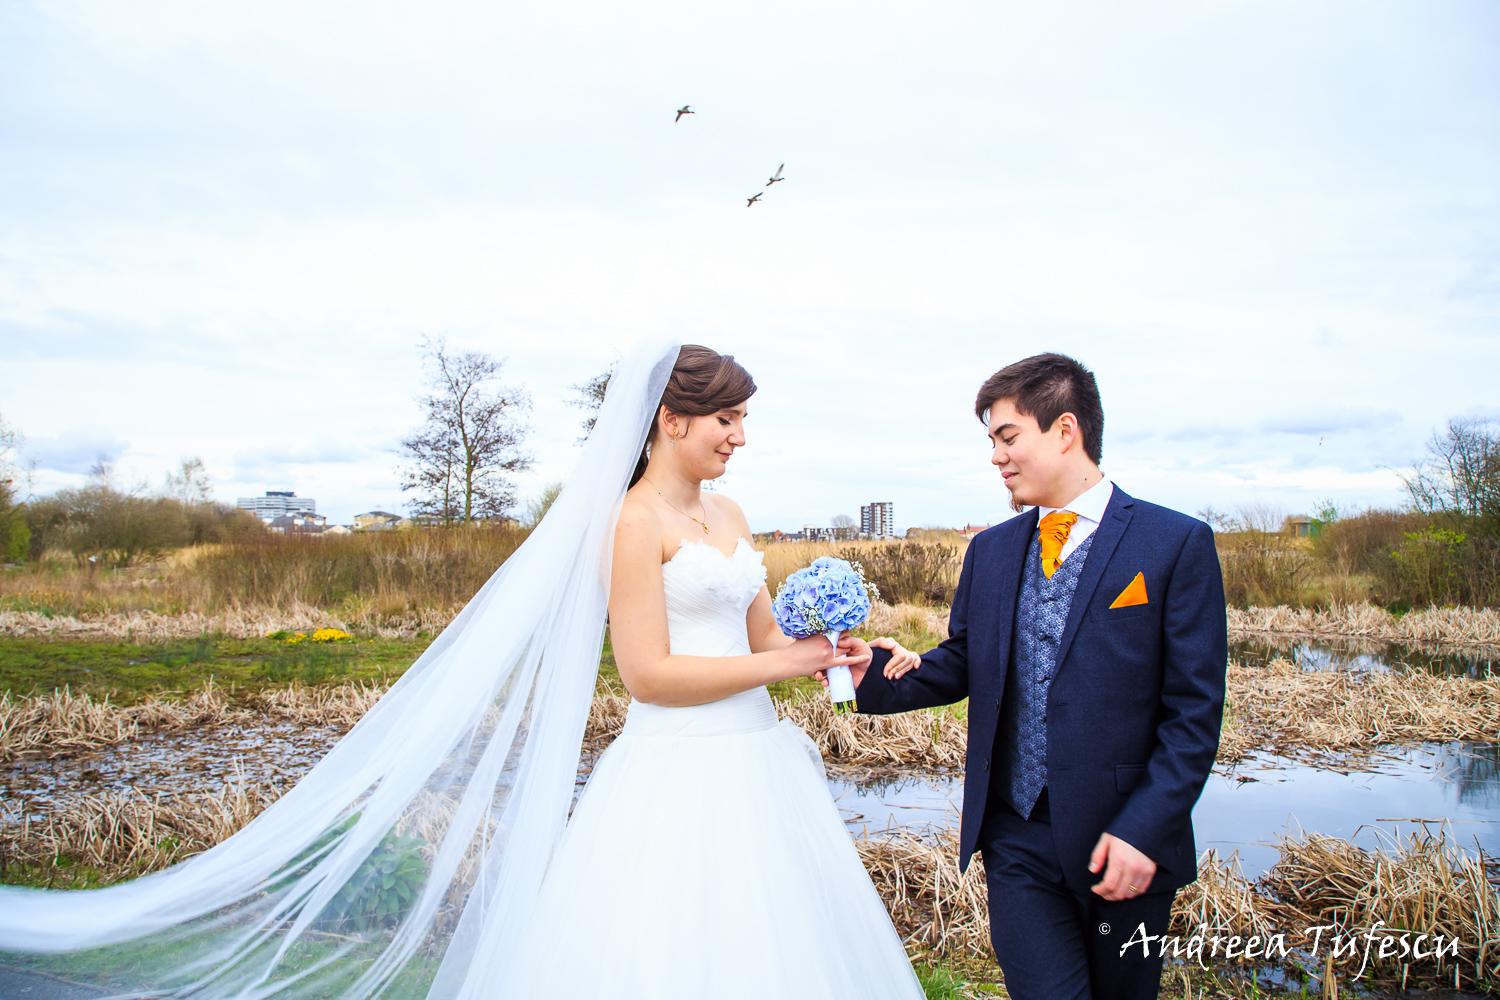  Wedding Photography by Andreea Tufescu - A & N Alternative Wedding - Wetland Centre wedding West London Barnes 